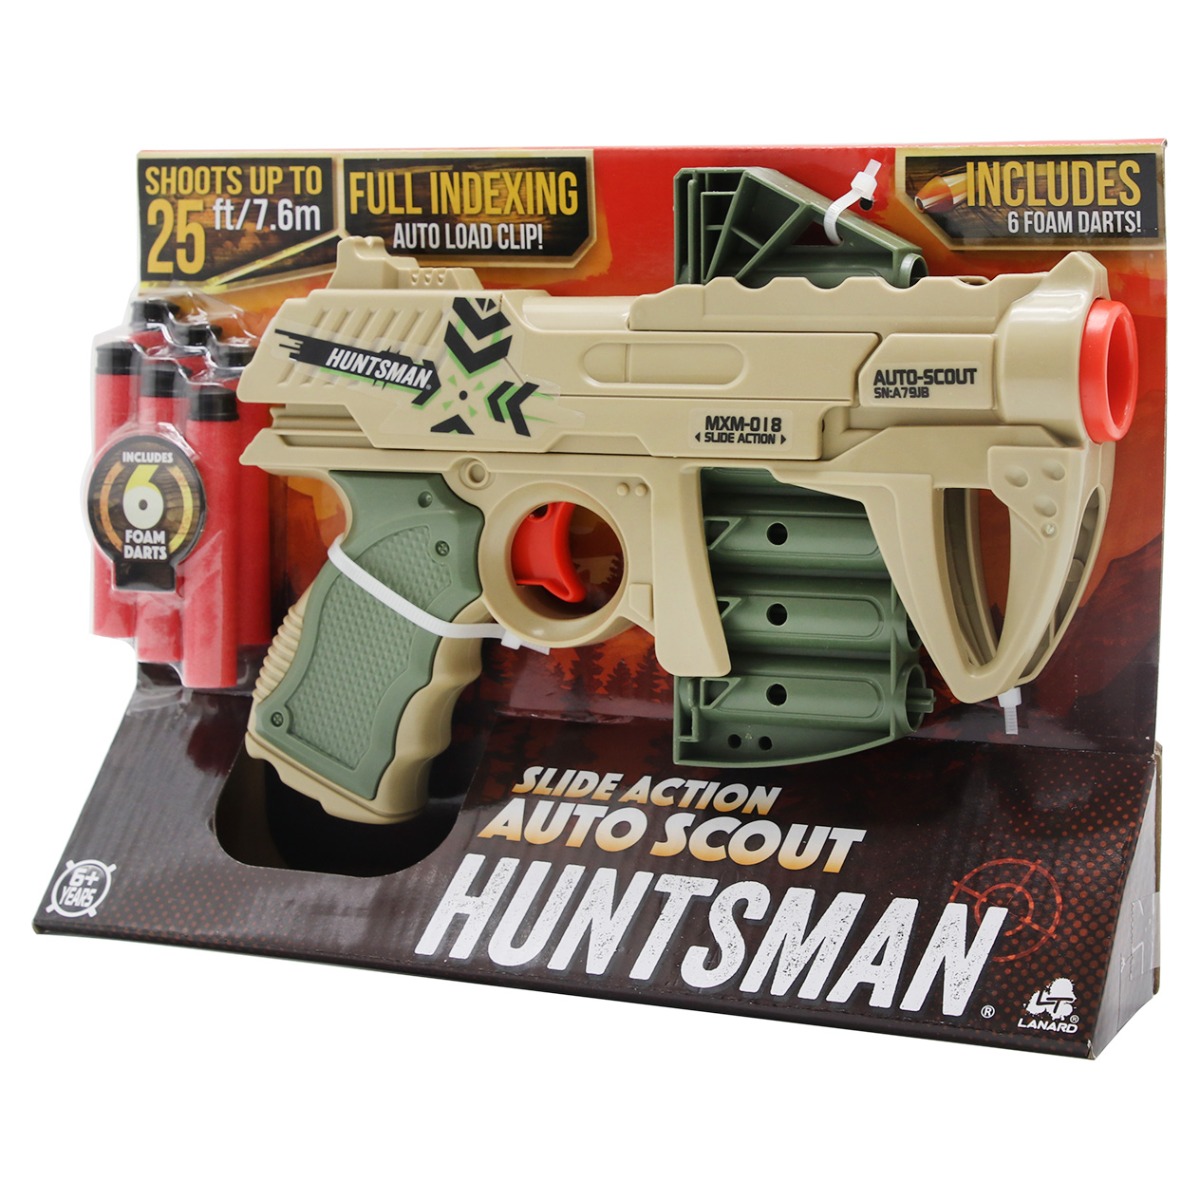 Poze Pistol Auto Scout cu 6 sageti din burete, Huntsman, Lanard Toys